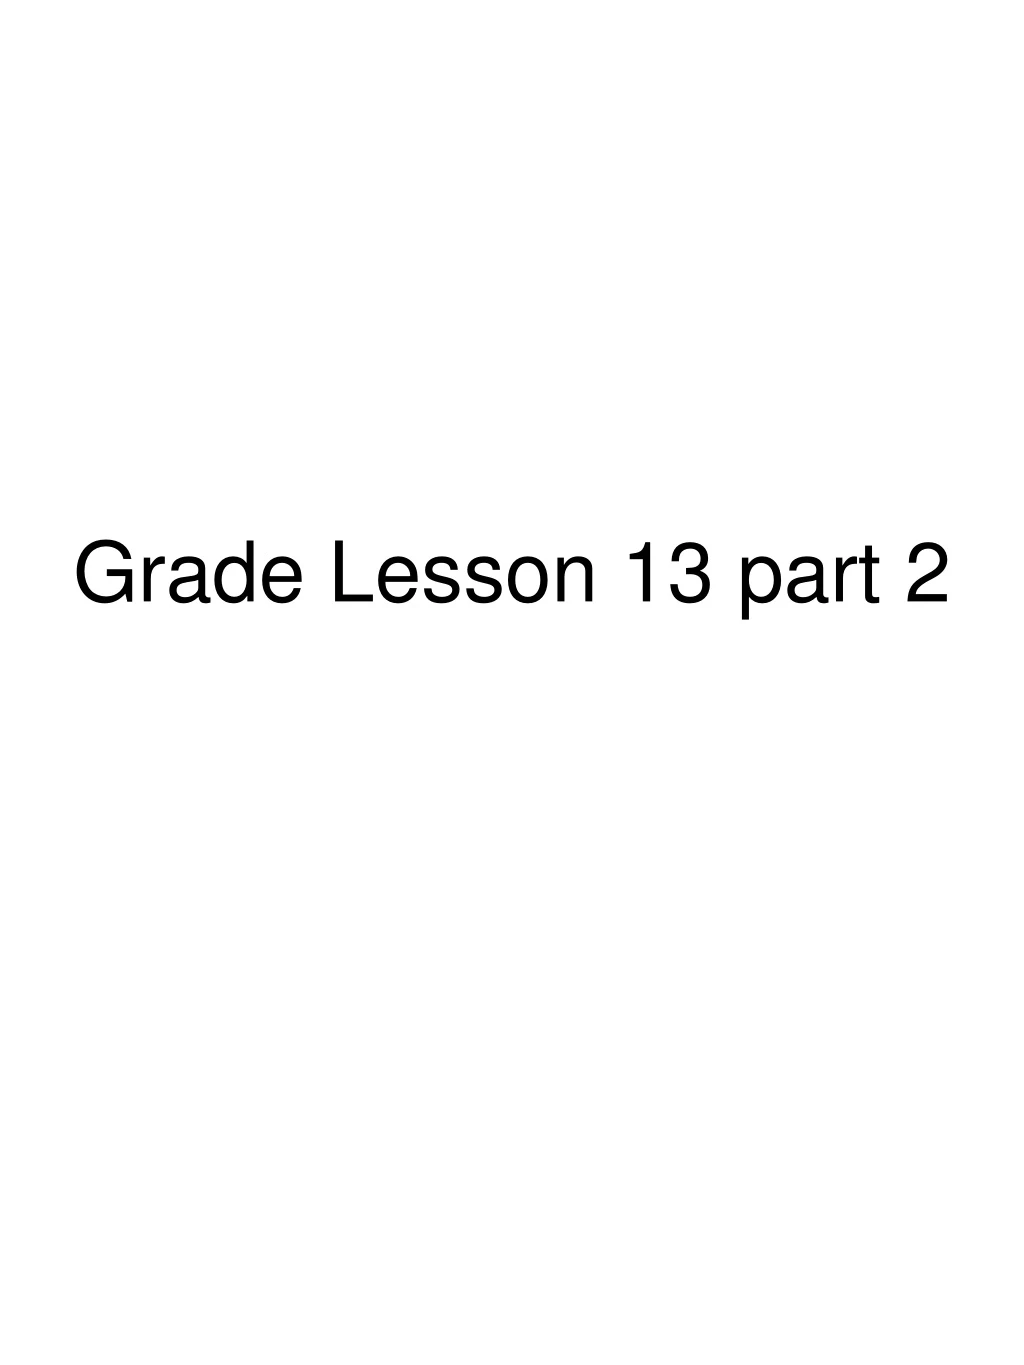 grade lesson 13 part 2